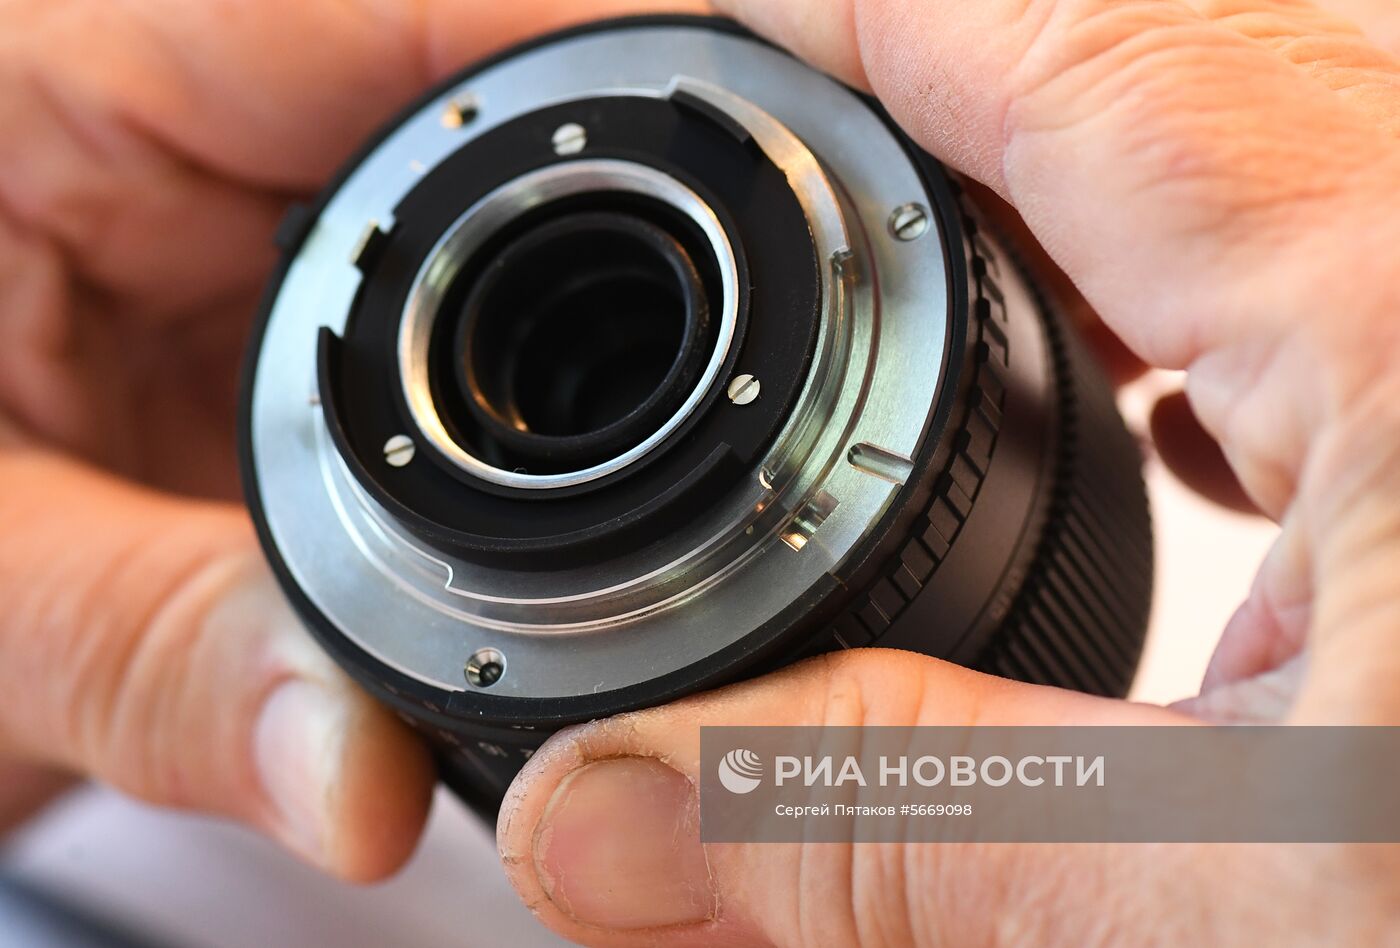 Производство отечественной цифровой фотокамеры "Зенит-М"